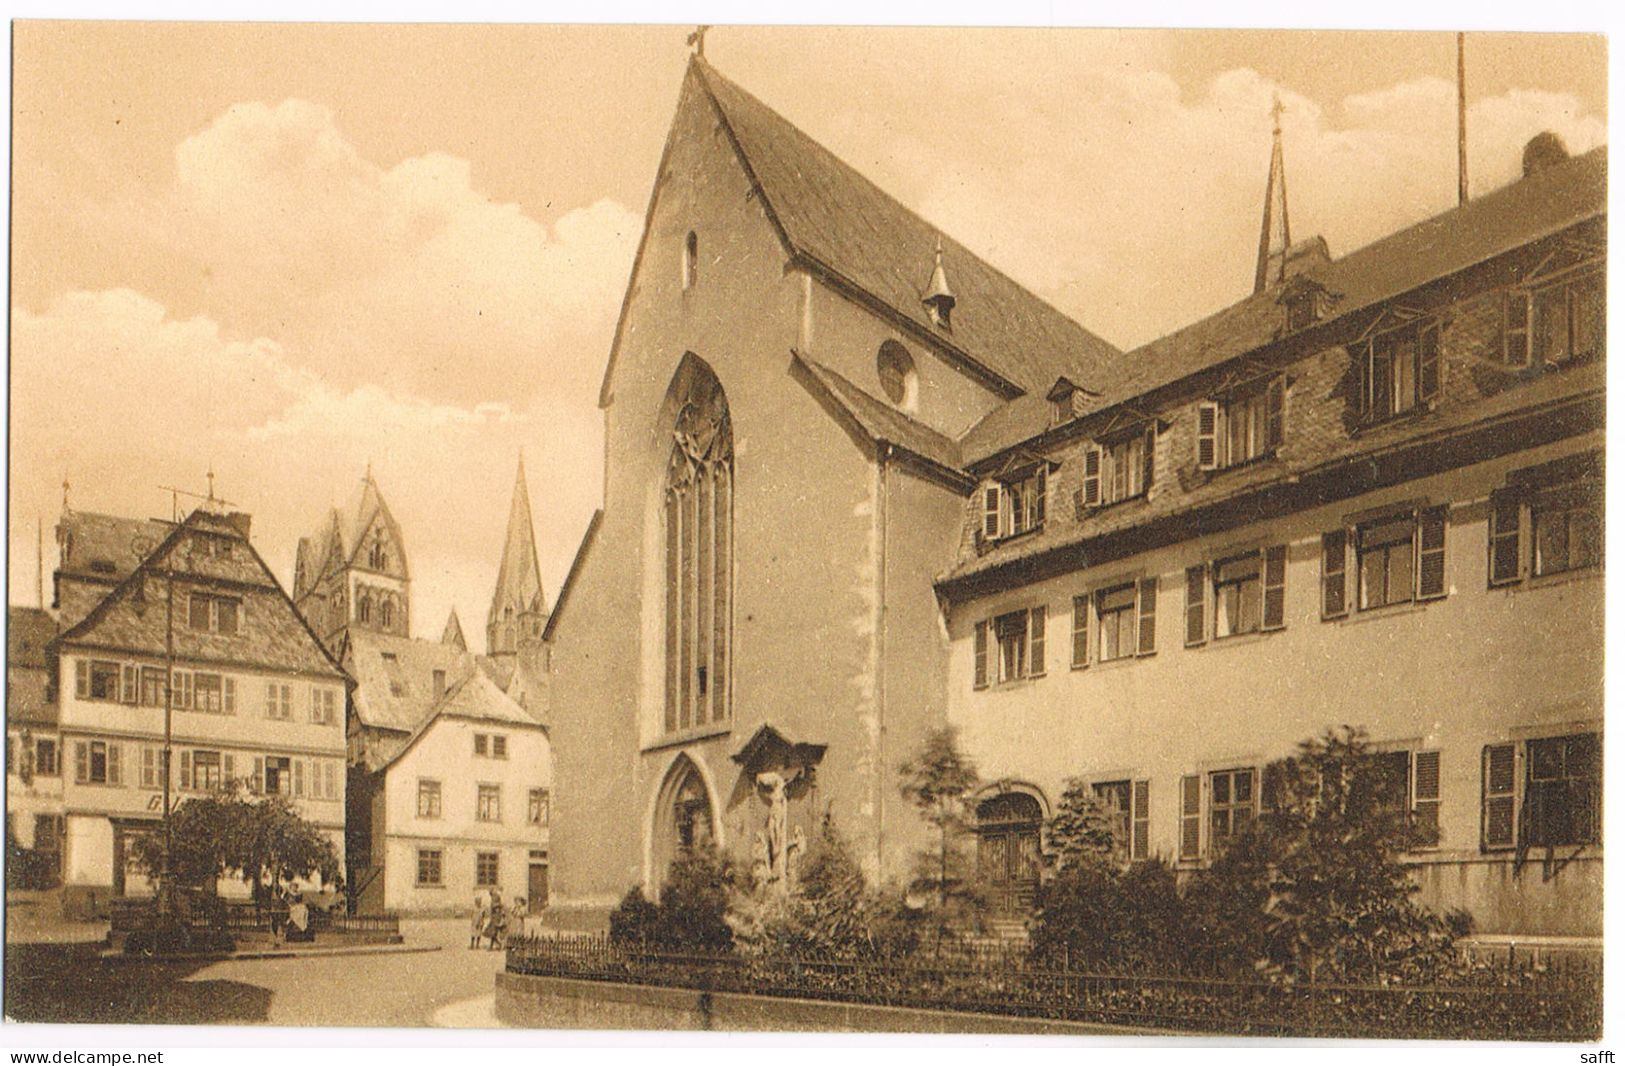 AK Limburg, Bischofsplatz Um 1910 - Limburg